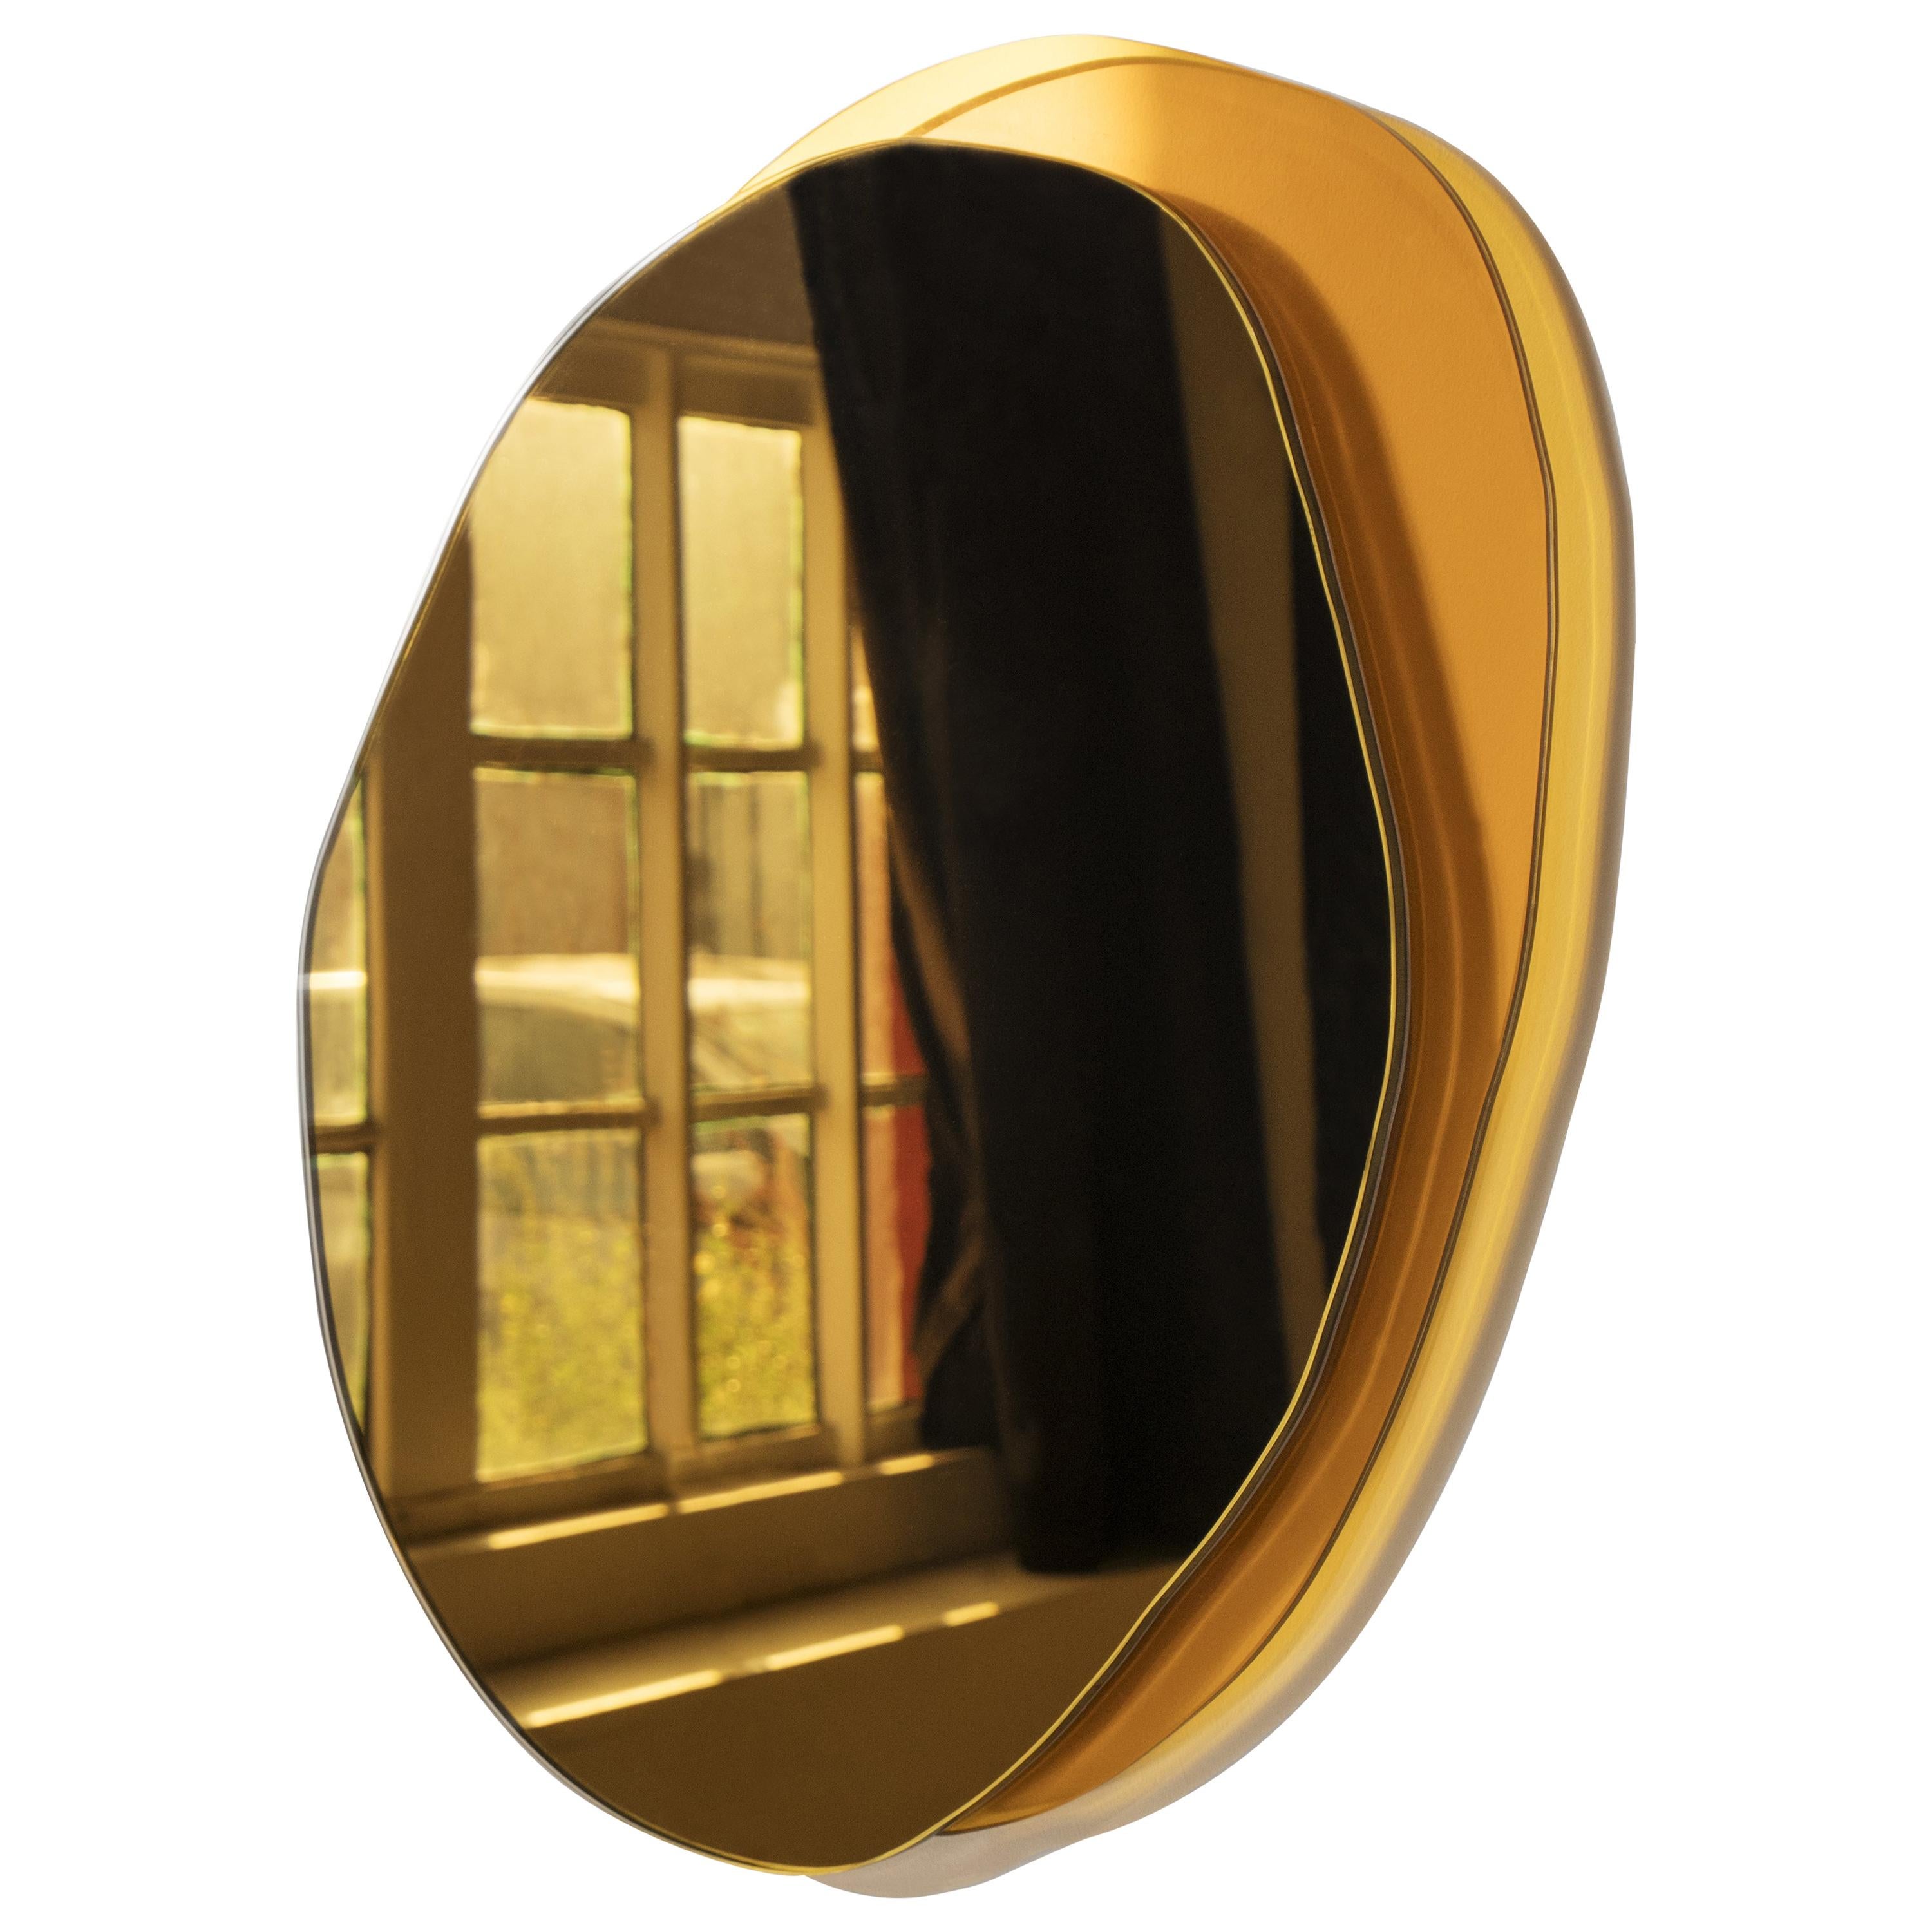 Ombrée kleiner handgeformter Spiegel, Laurene Guarneri
Limitierte Ausgabe.
Handgefertigt.
Goldener Spiegel und gelbes Glas.
Größen: 40 x 2,5 cm

(Kann auf Bestellung auch in anderen Abmessungen hergestellt werden).
Haken zum Aufhängen